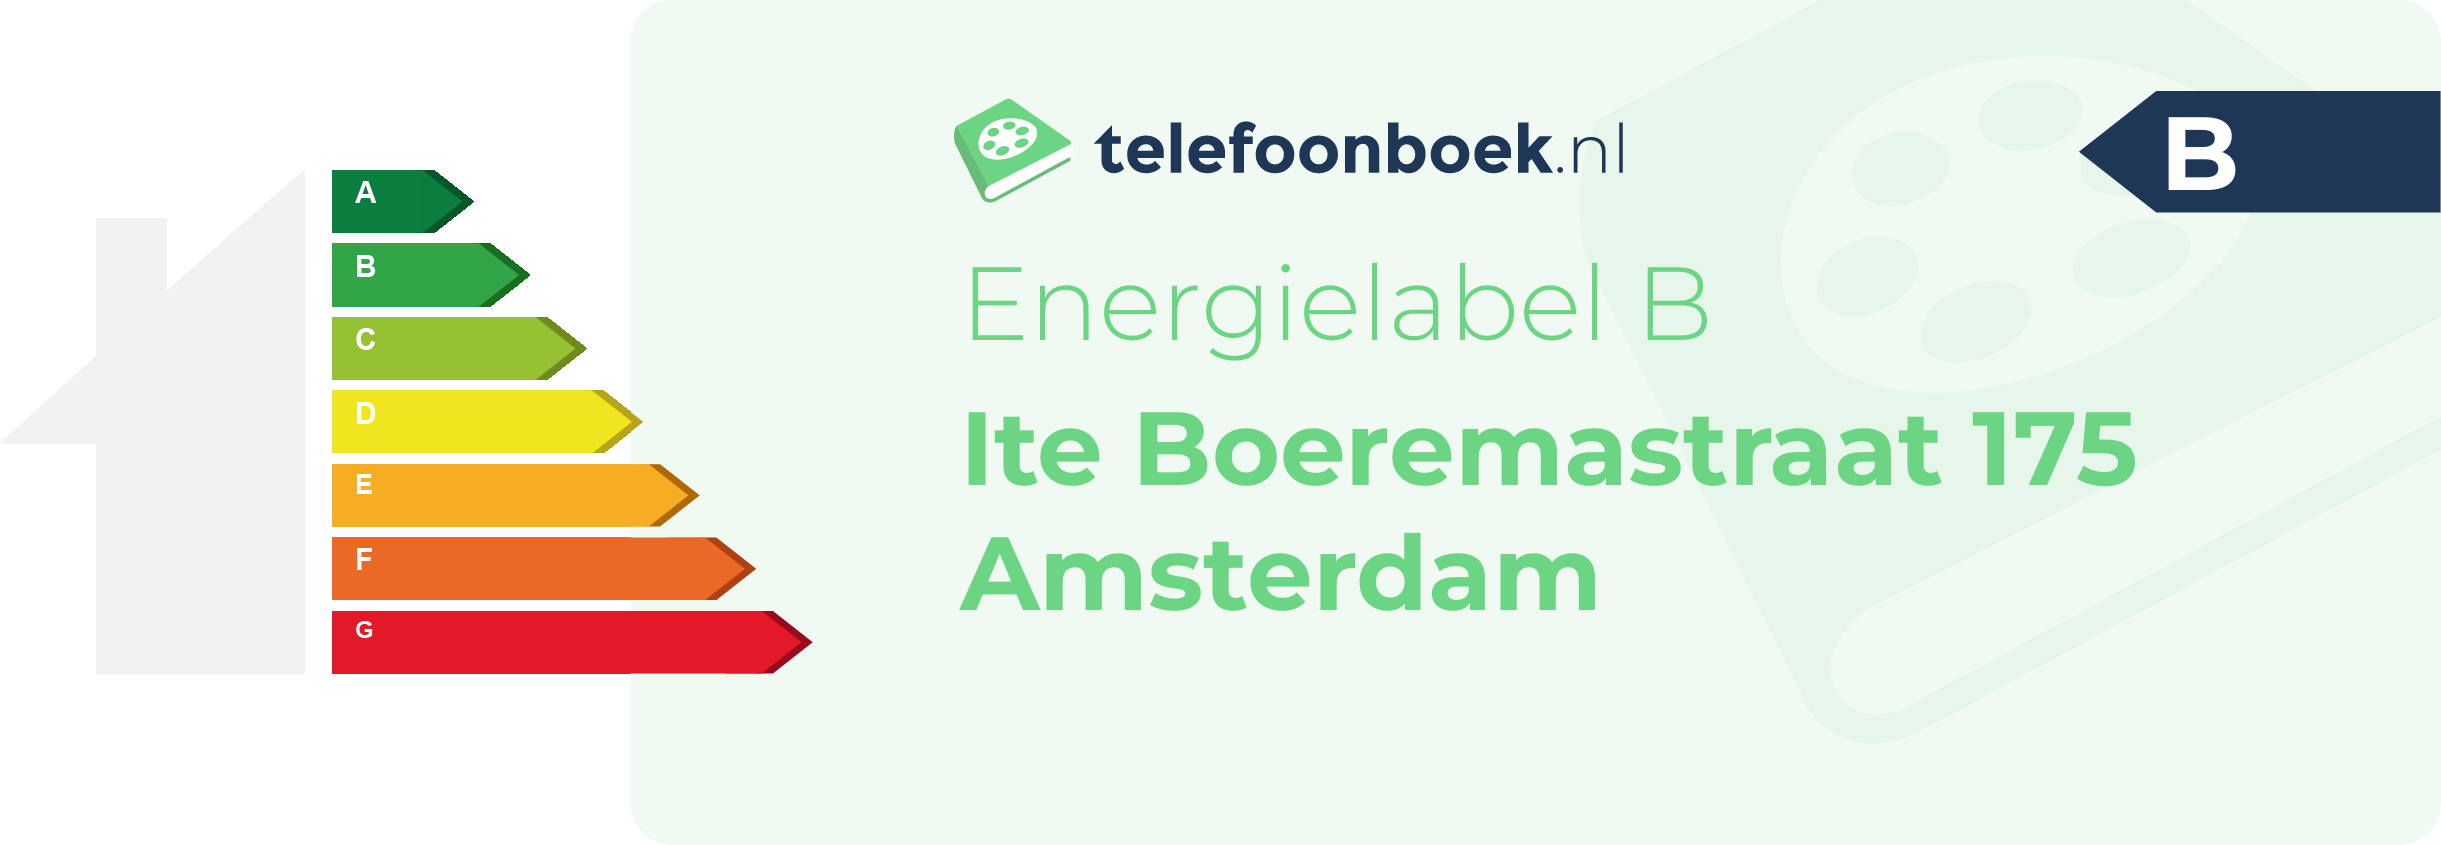 Energielabel Ite Boeremastraat 175 Amsterdam